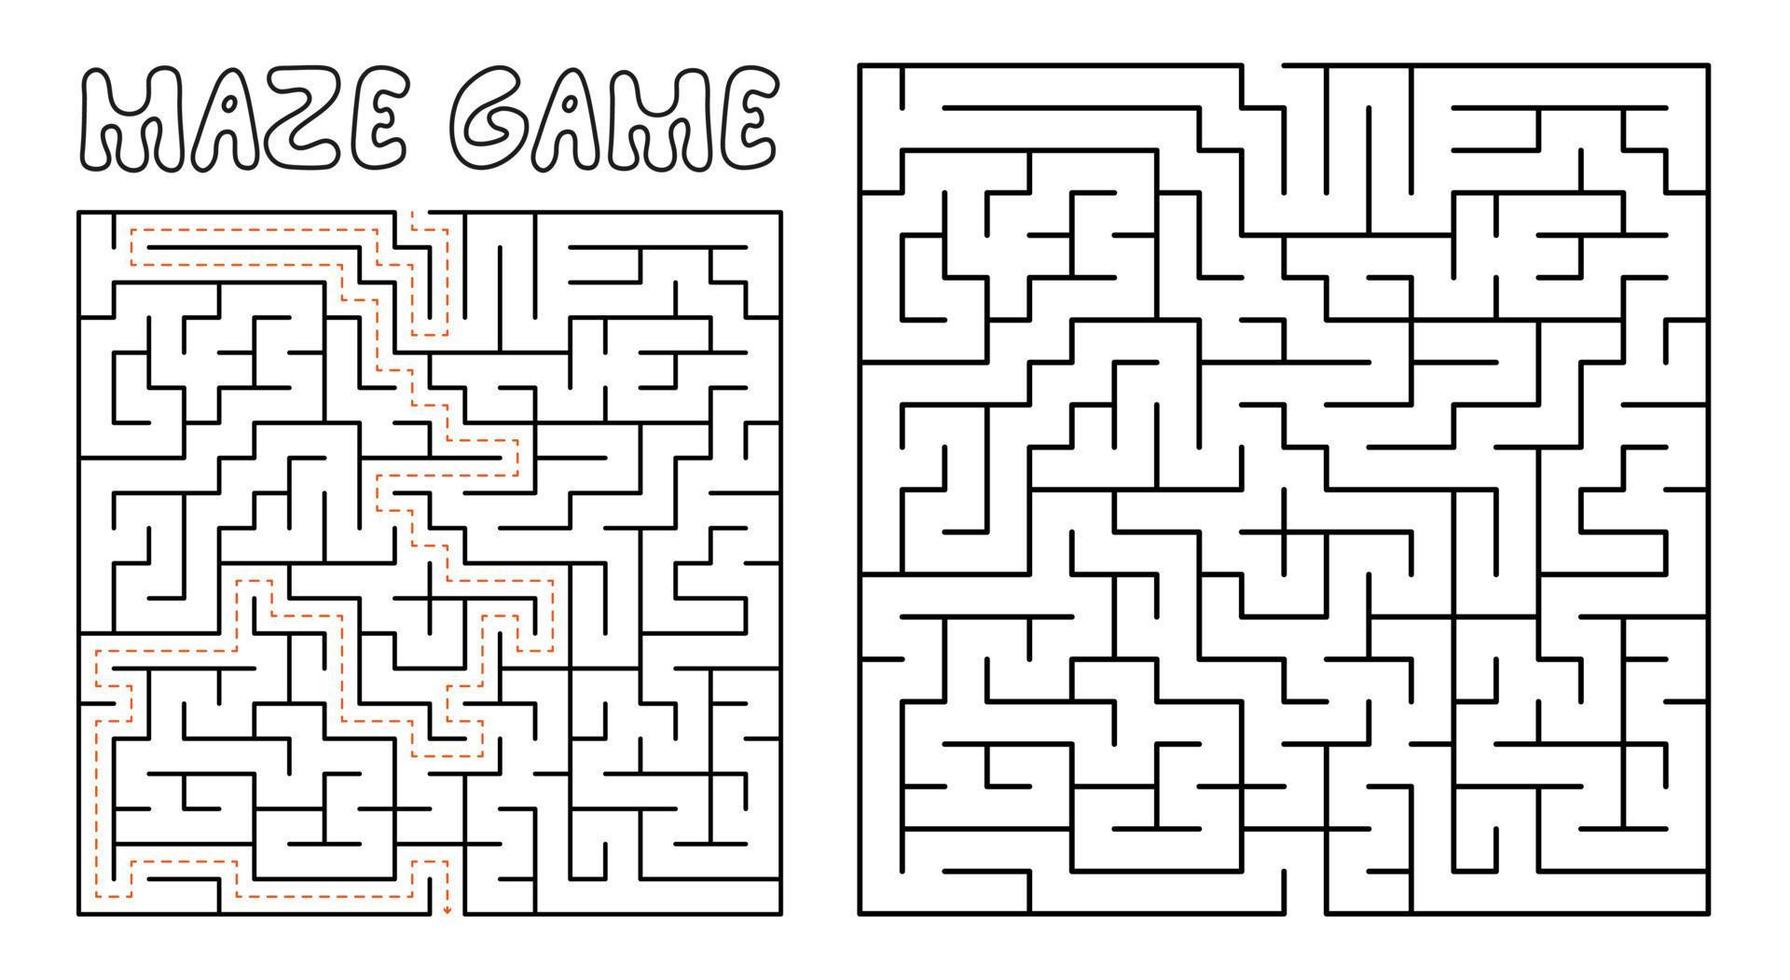 jeu de labyrinthe pour les enfants. labyrinthe complexe avec solution vecteur